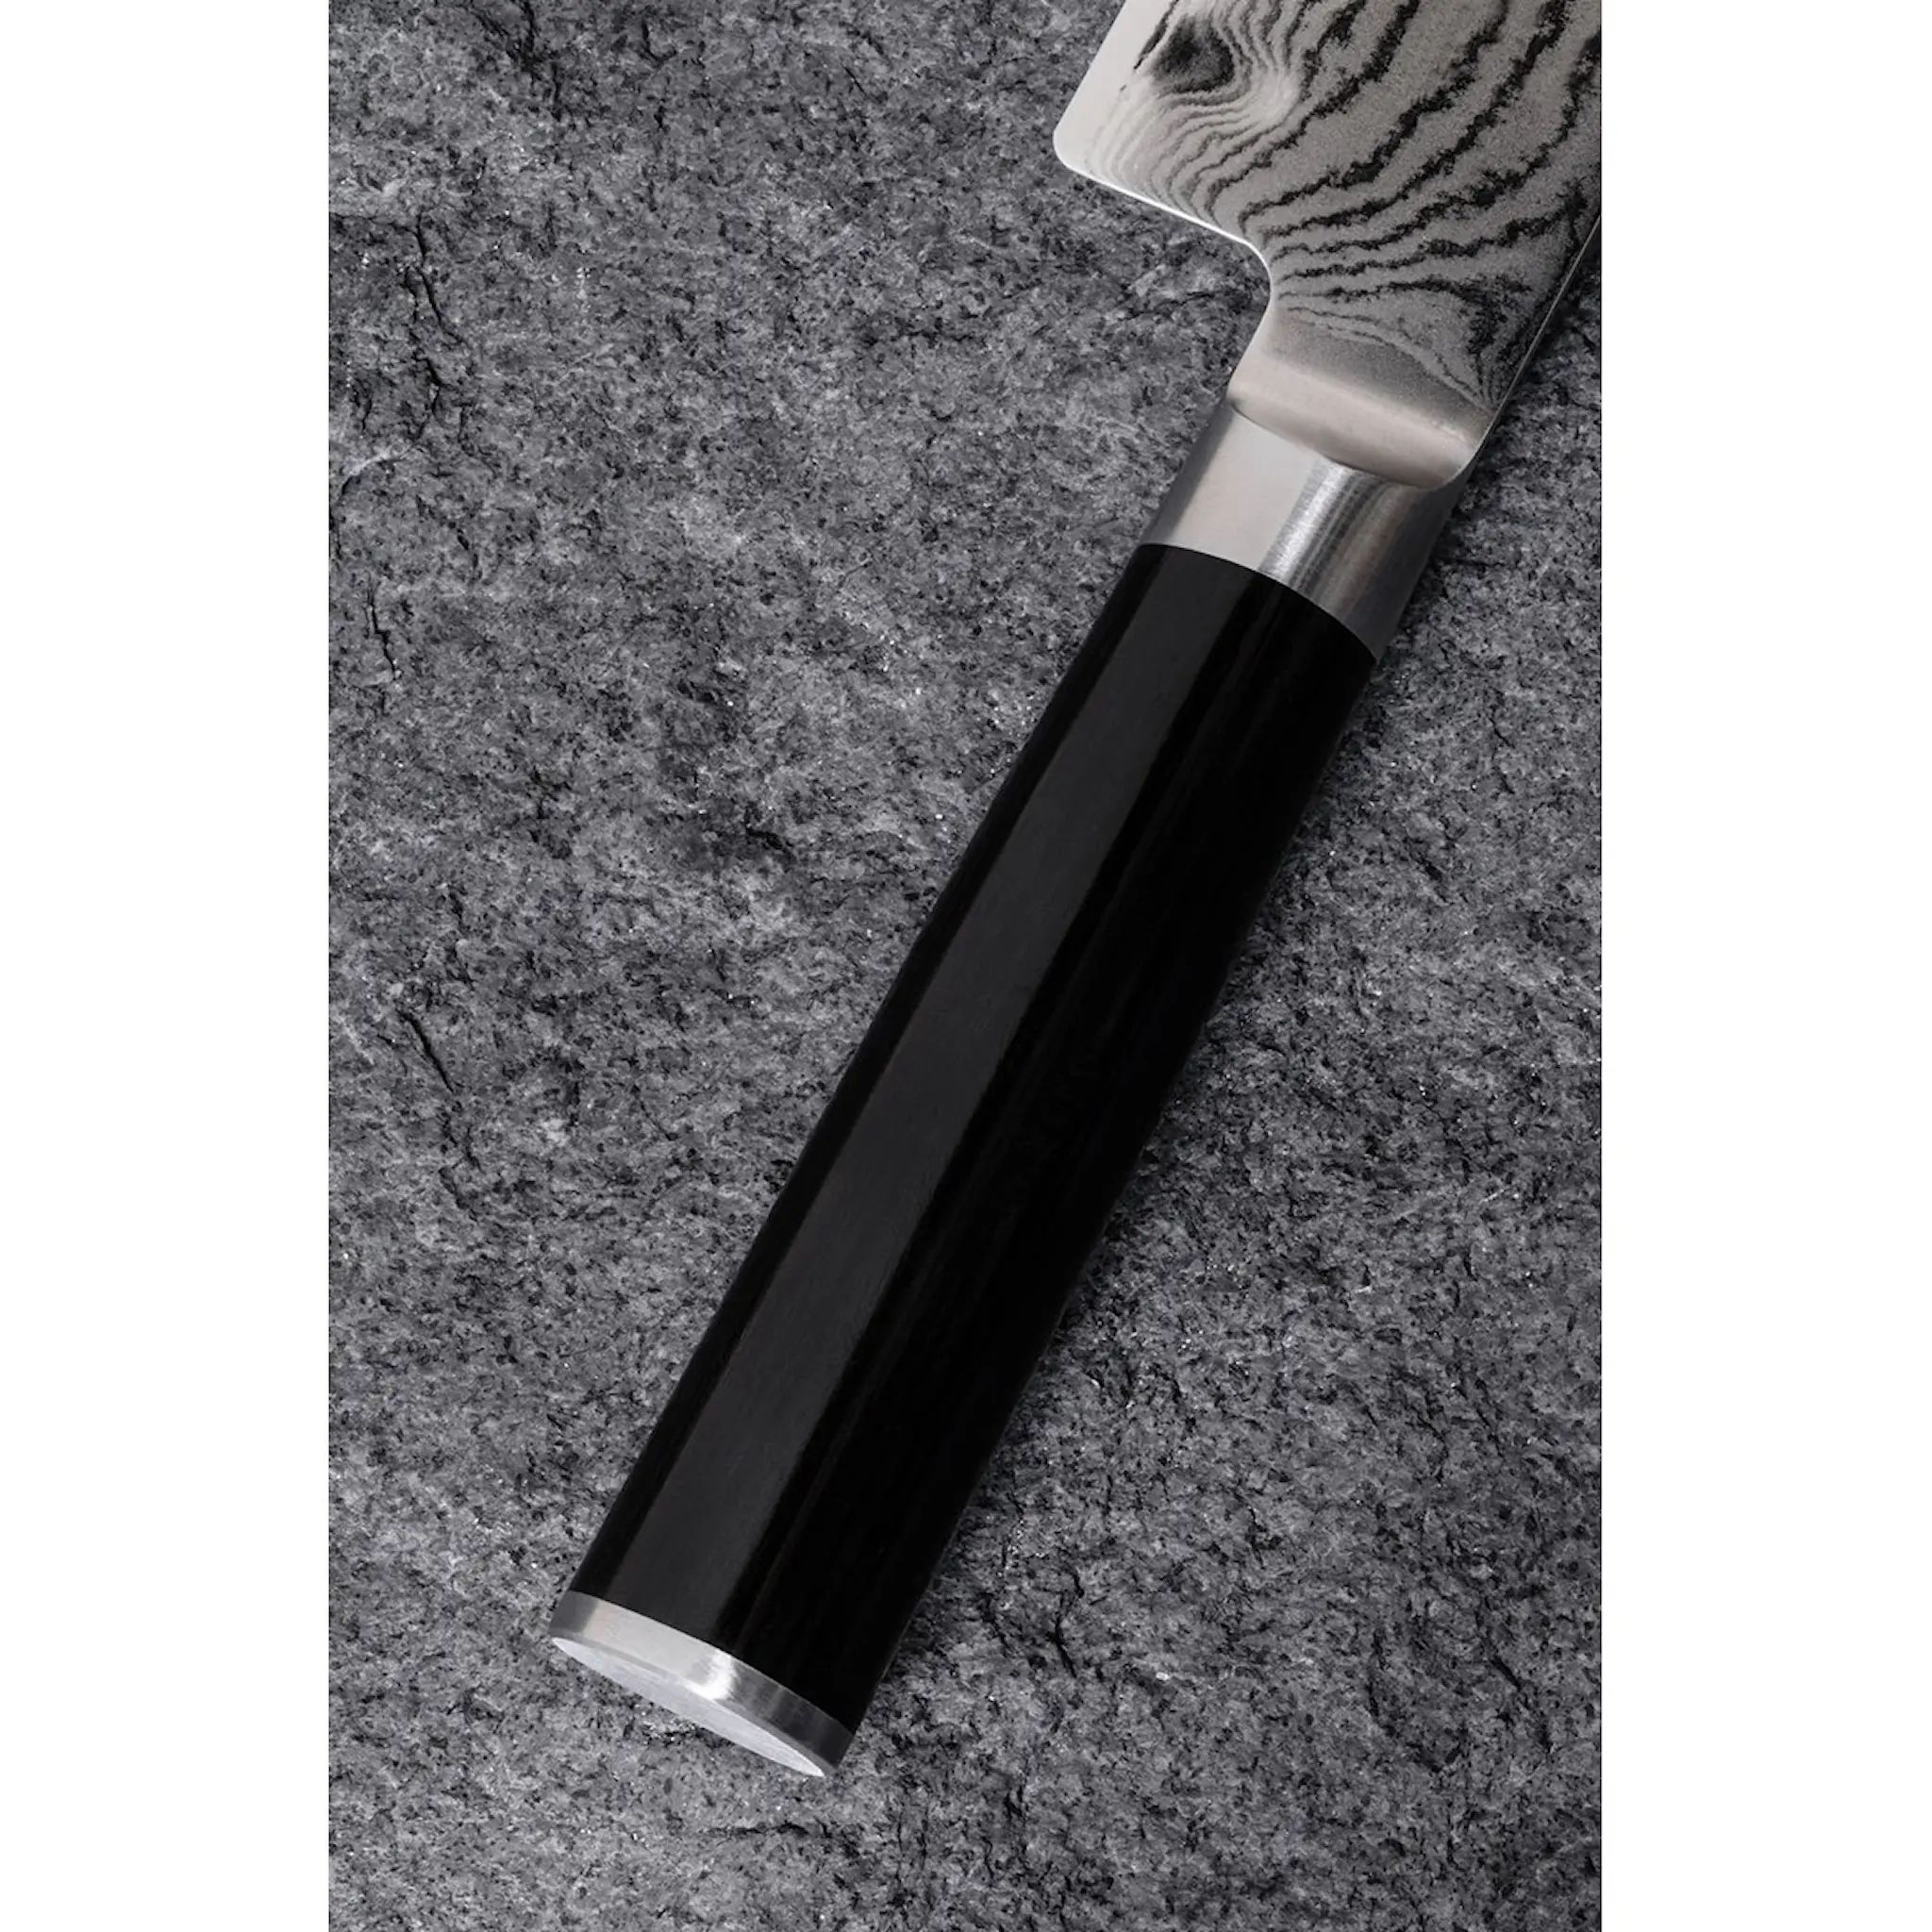 KAI Shun Classic Santoku-veitsi ovaalihiottu 17,5 cm